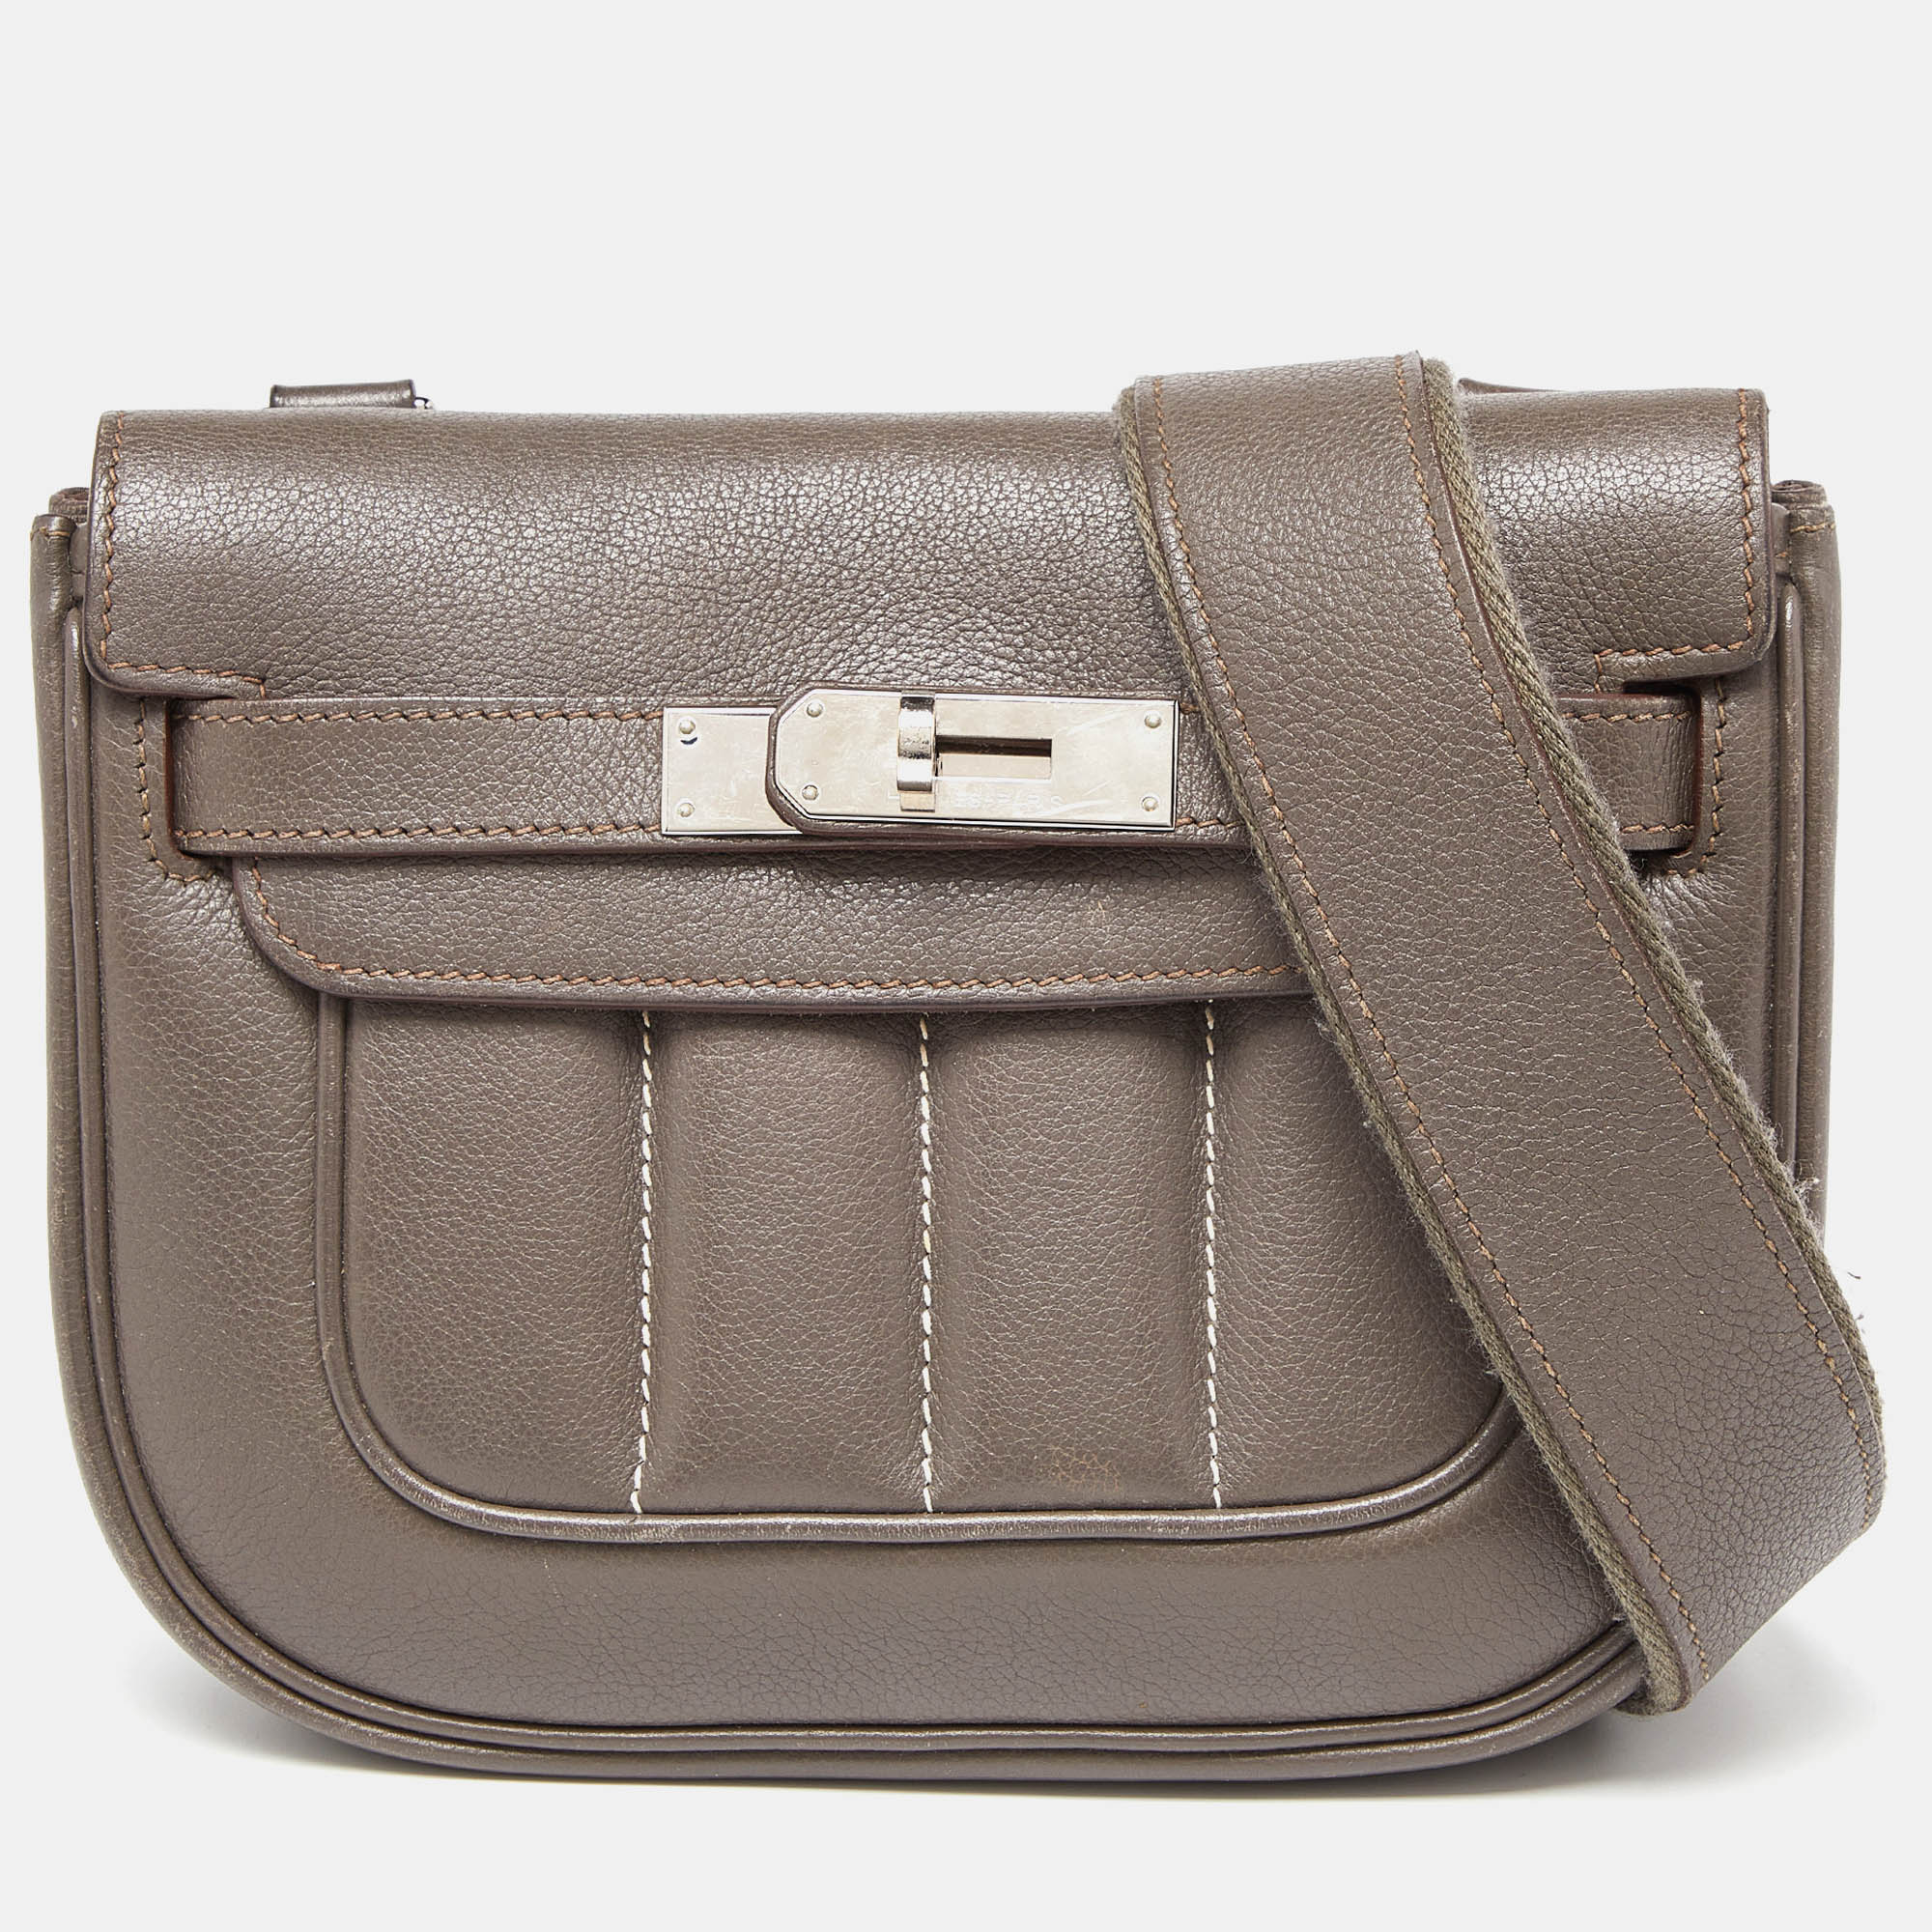 Hermes Etain Swift Leather Berline 21 Bag